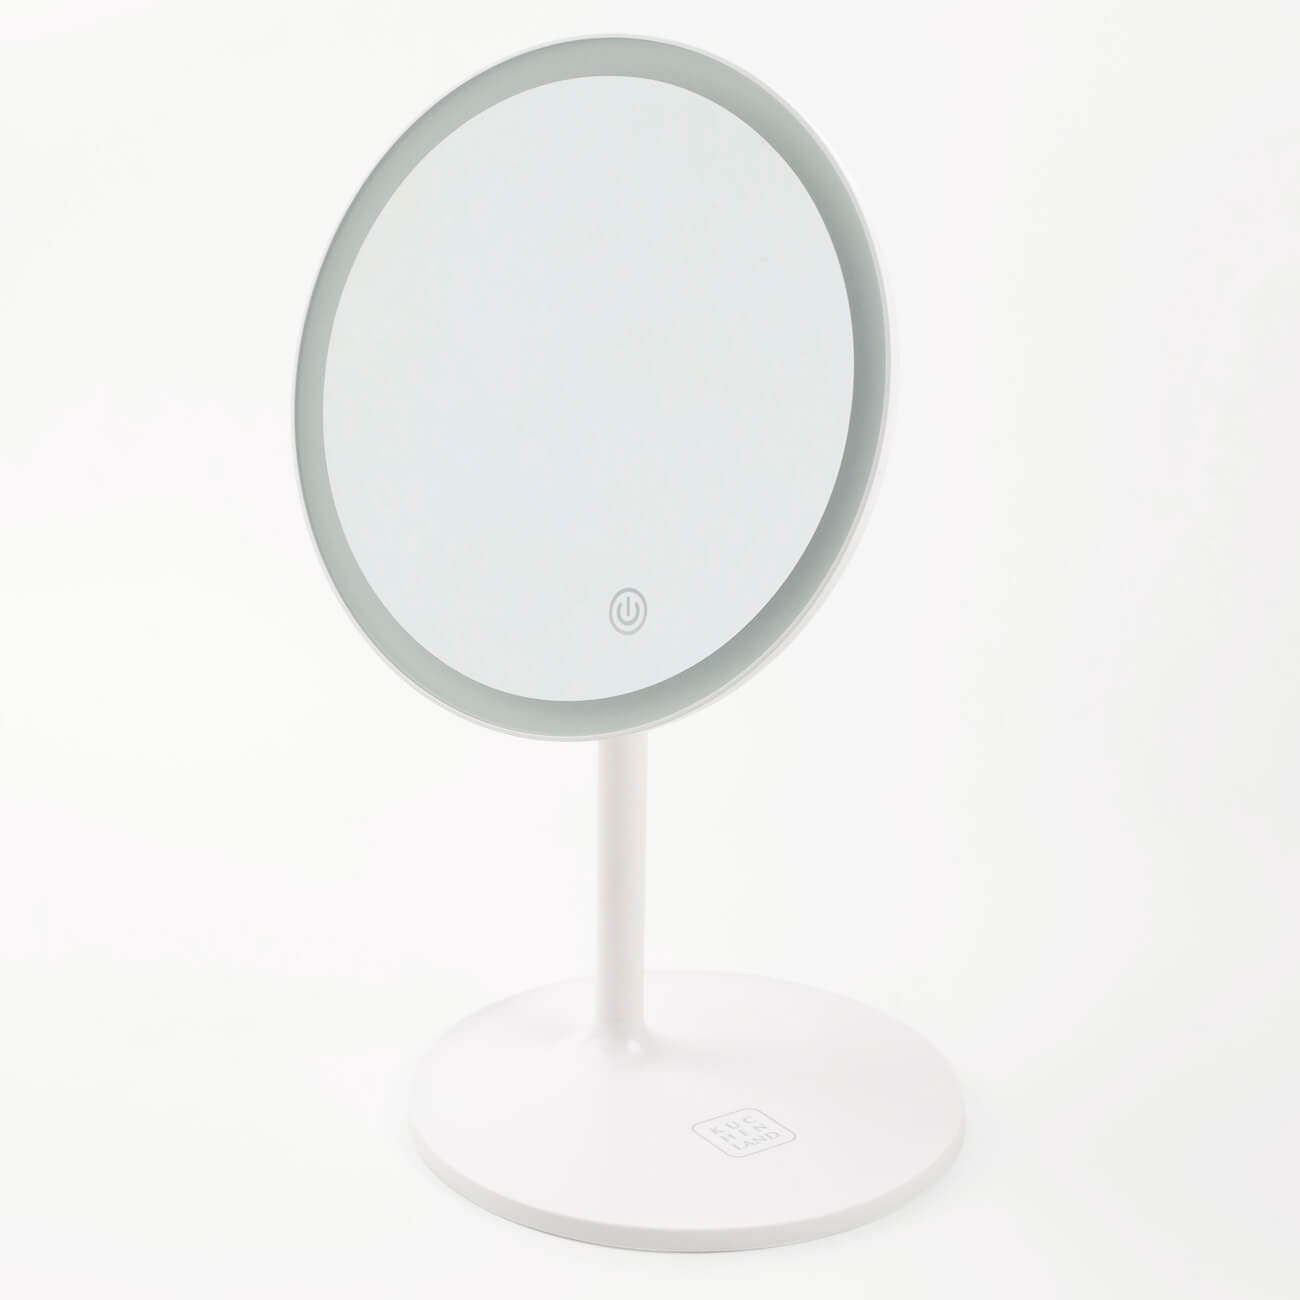 Зеркало настольное, 33 см, с подсветкой, на подставке, пластик, круглое, белое, Vesta раскладное настольное зеркало для макияжа bradex